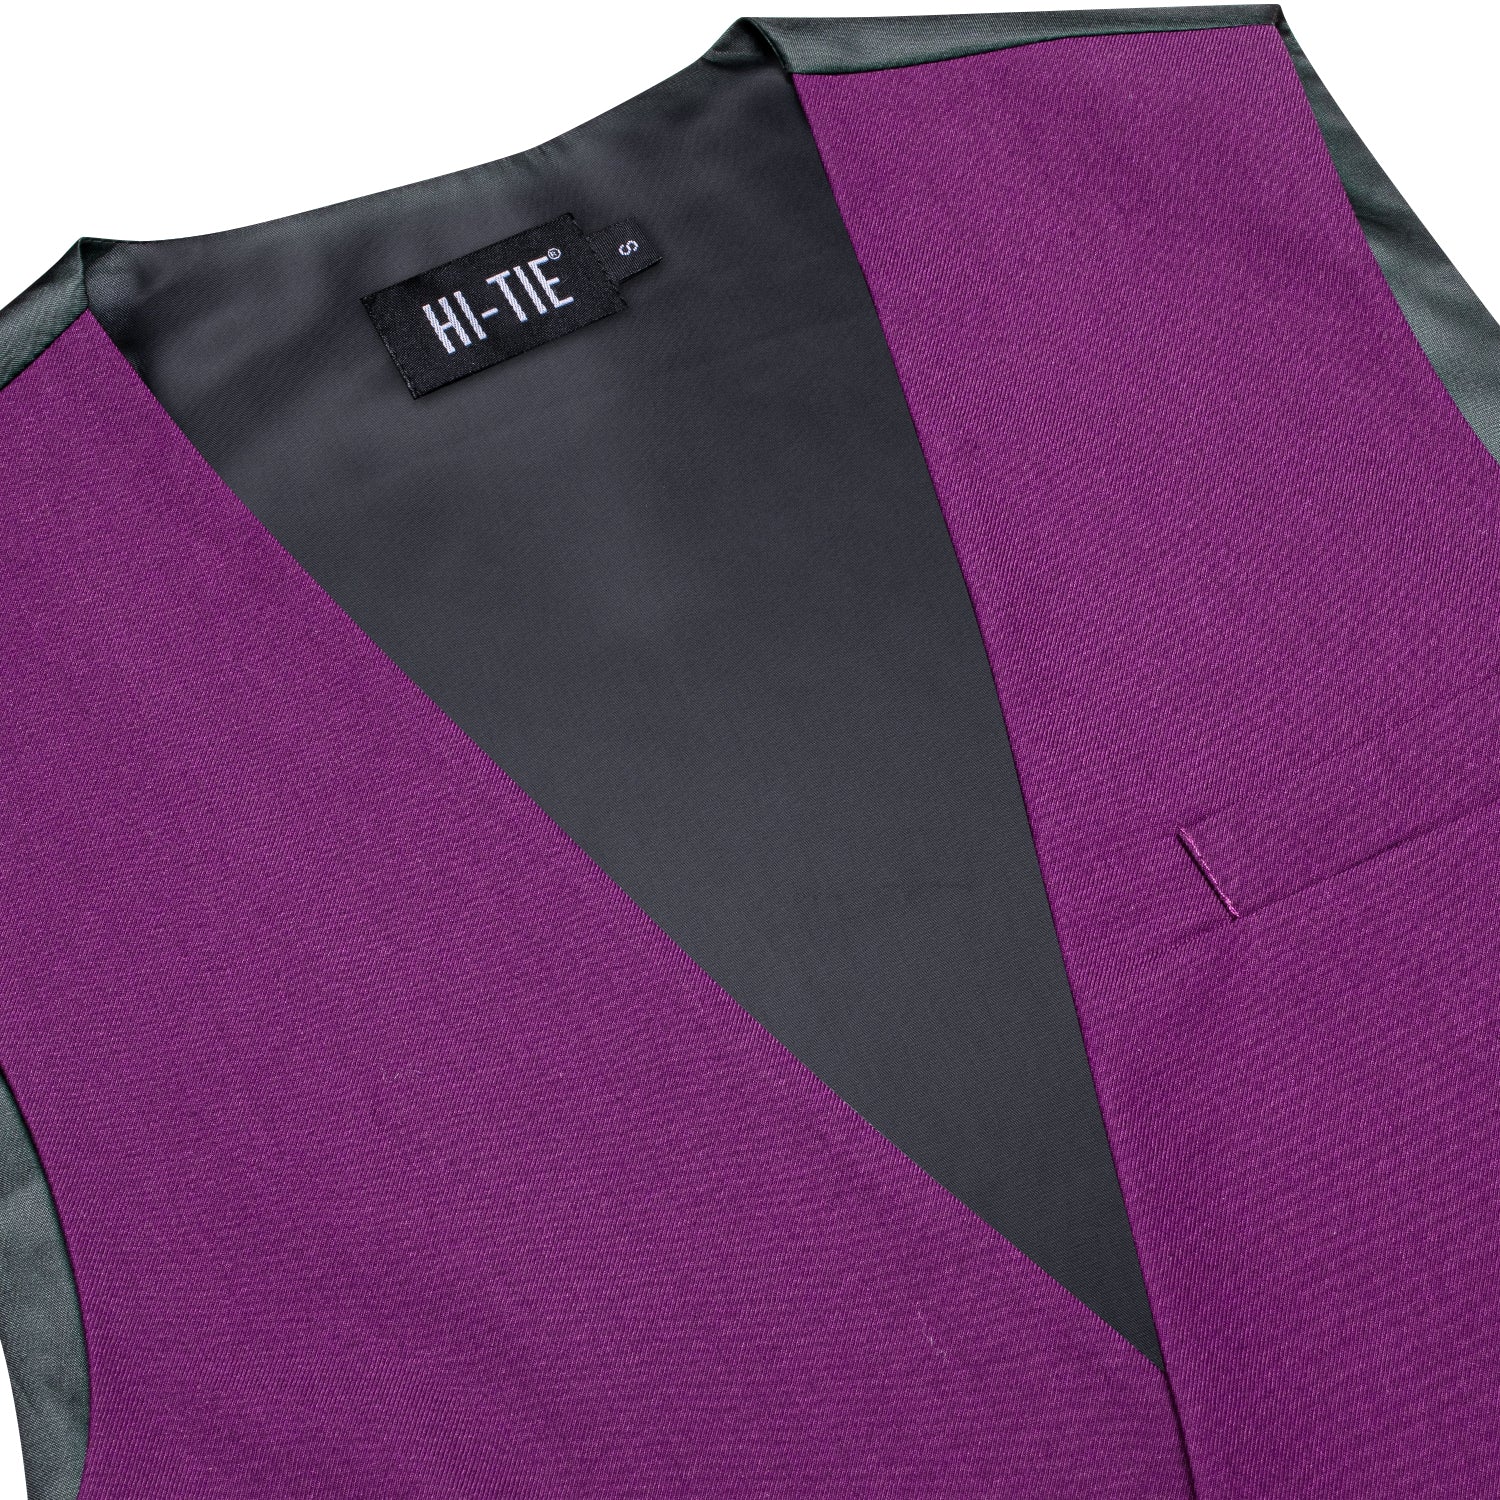 New Purple Solid Silk Men's Single Vest Waistcoat